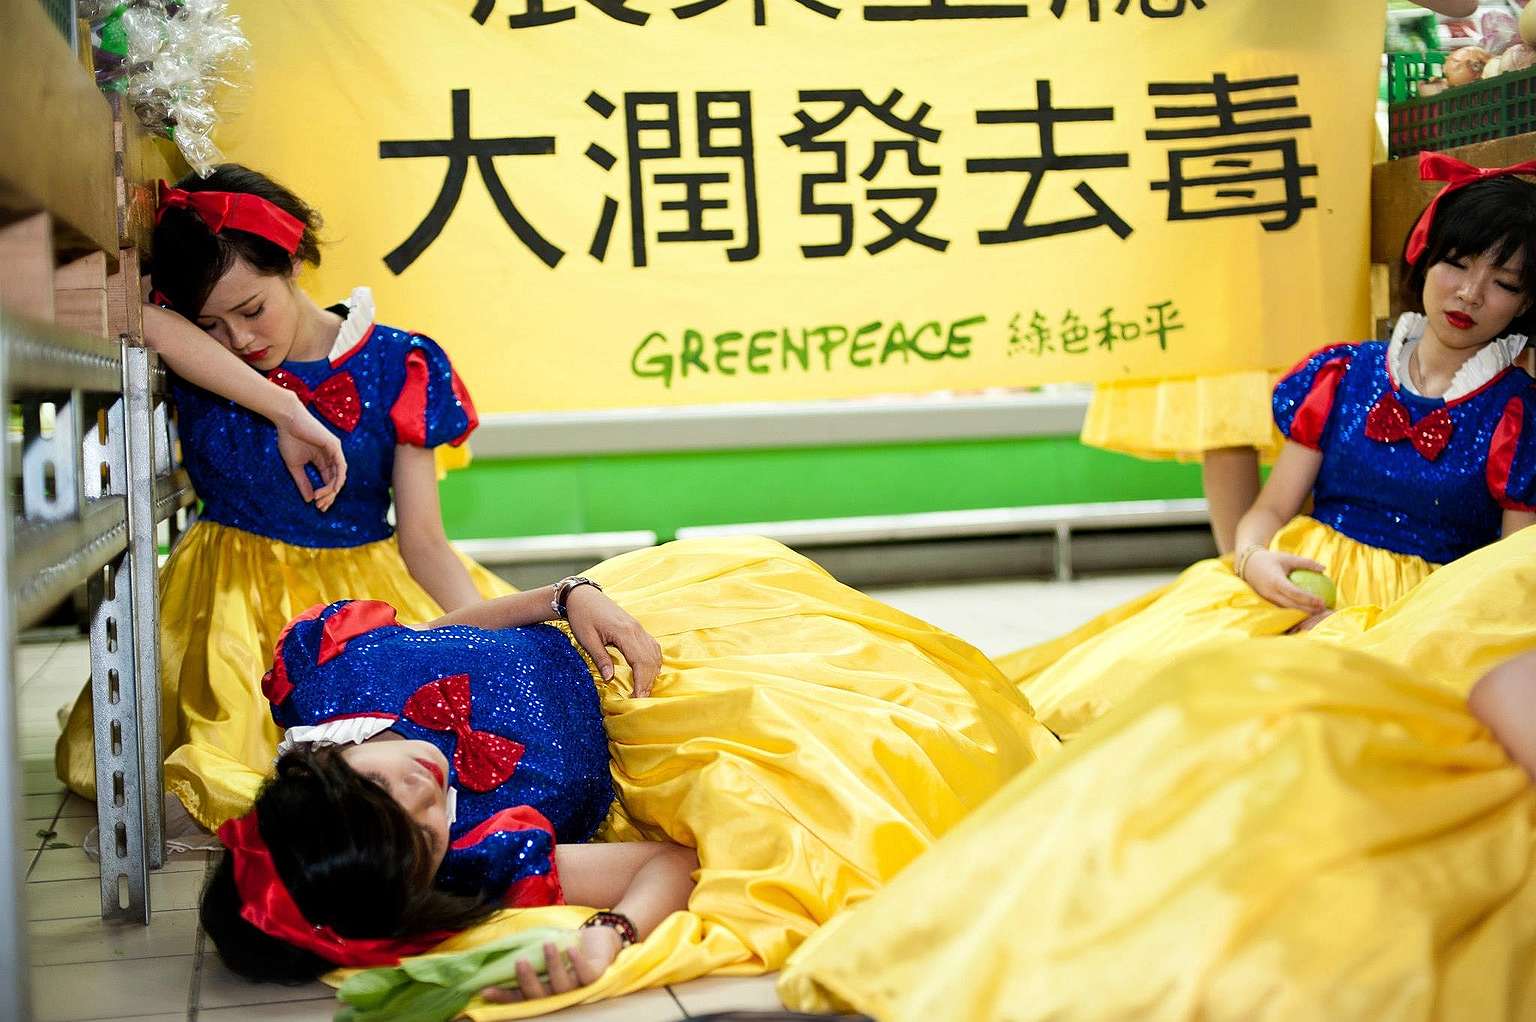 2012年，綠色和平行動者打扮成白雪公主，因吃了殘留過多農藥的毒蘋果昏倒在超市，要求政府及企業重視農藥危害及食品安全。© Greenpeace